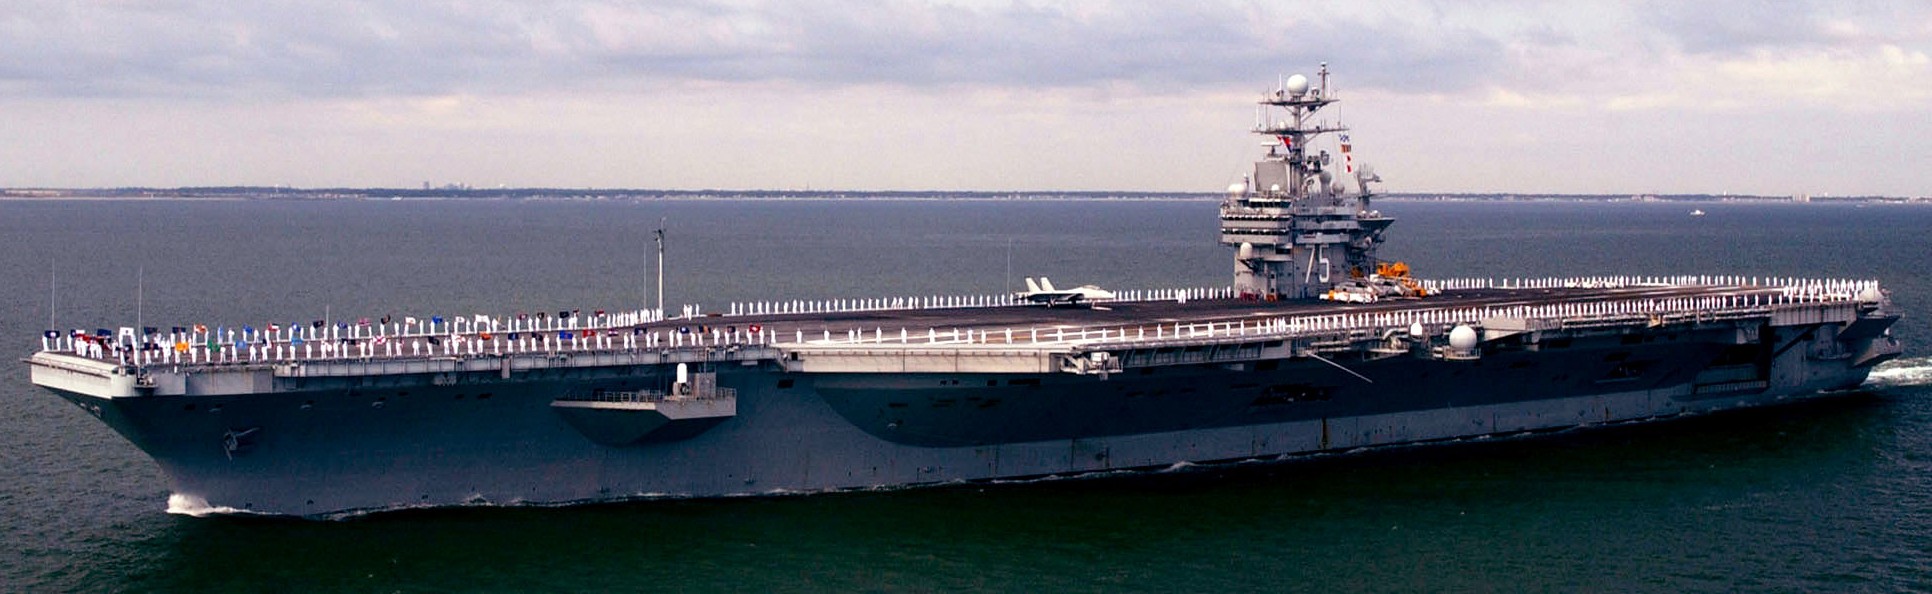 uss harry s. truman cvn-75 aircraft carrier 217